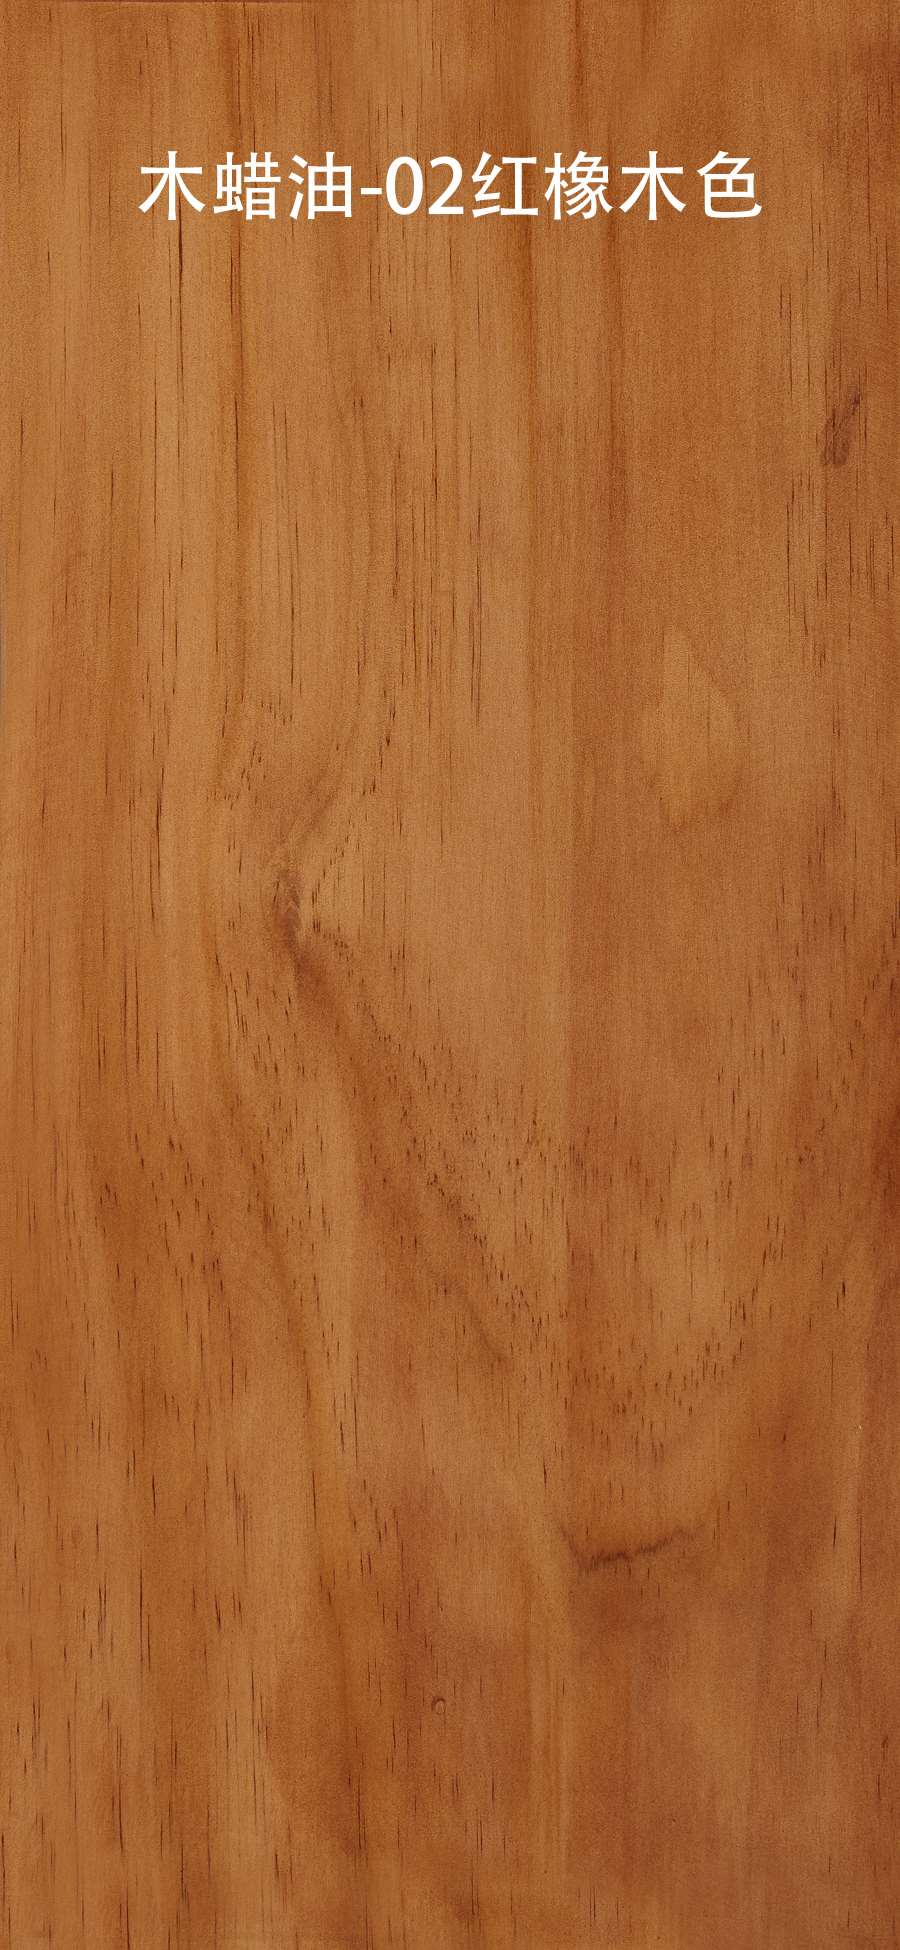 高档实木纯木头电脑桌简约桌子方形木质设计师办公桌家用书桌工作